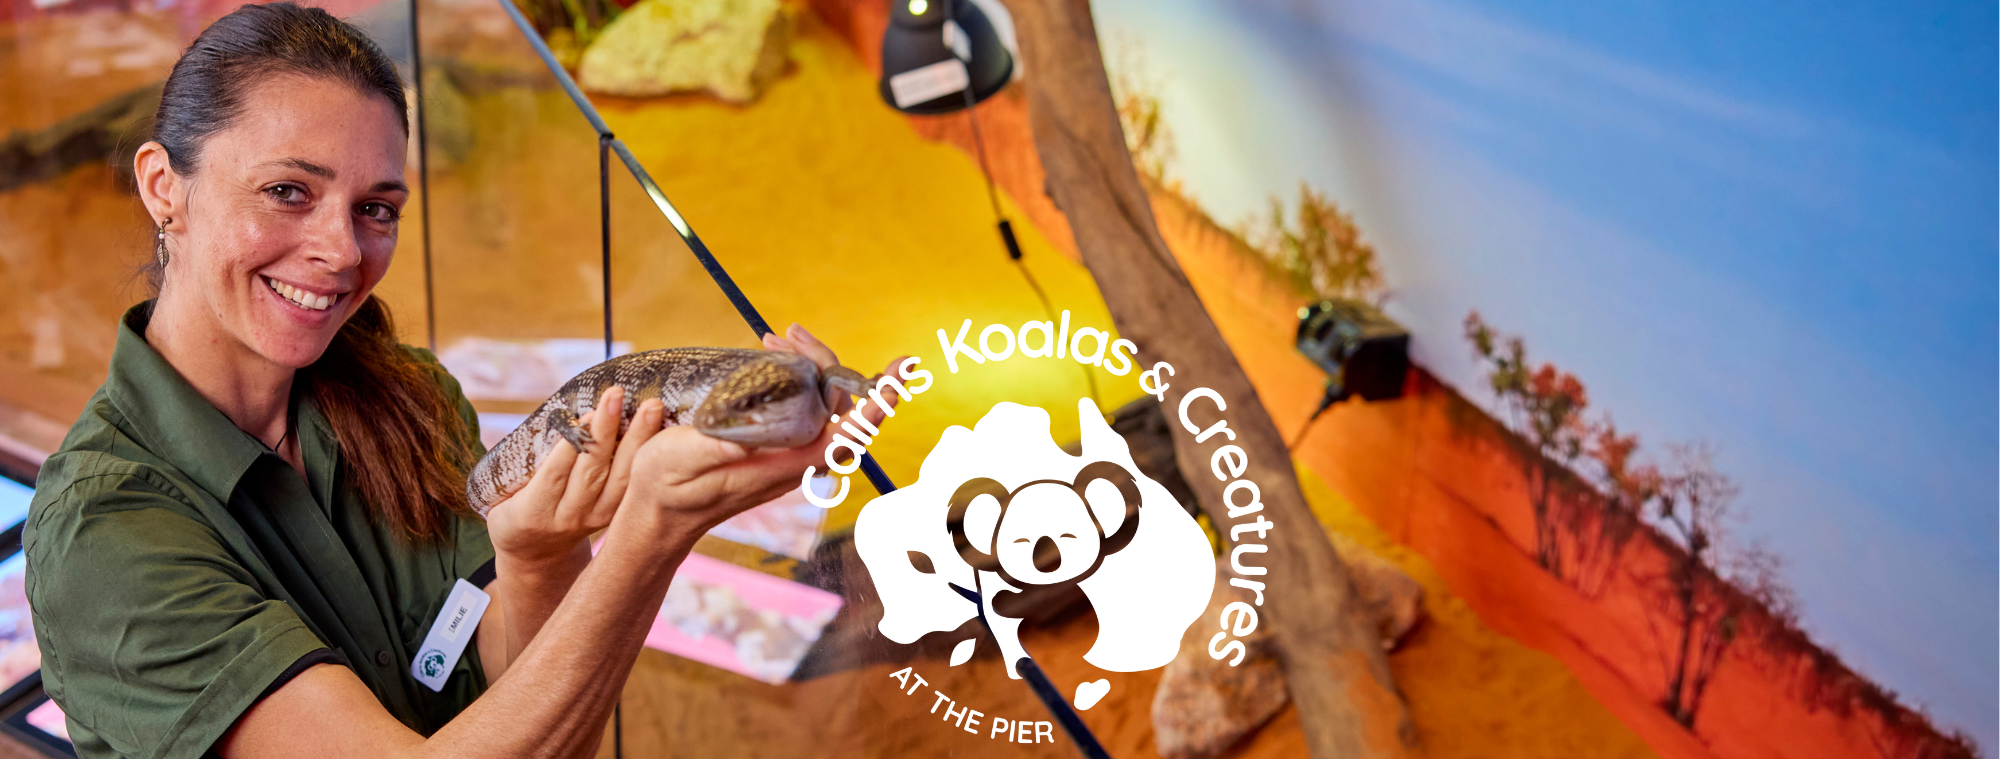 Cairns Koalas & Creatures